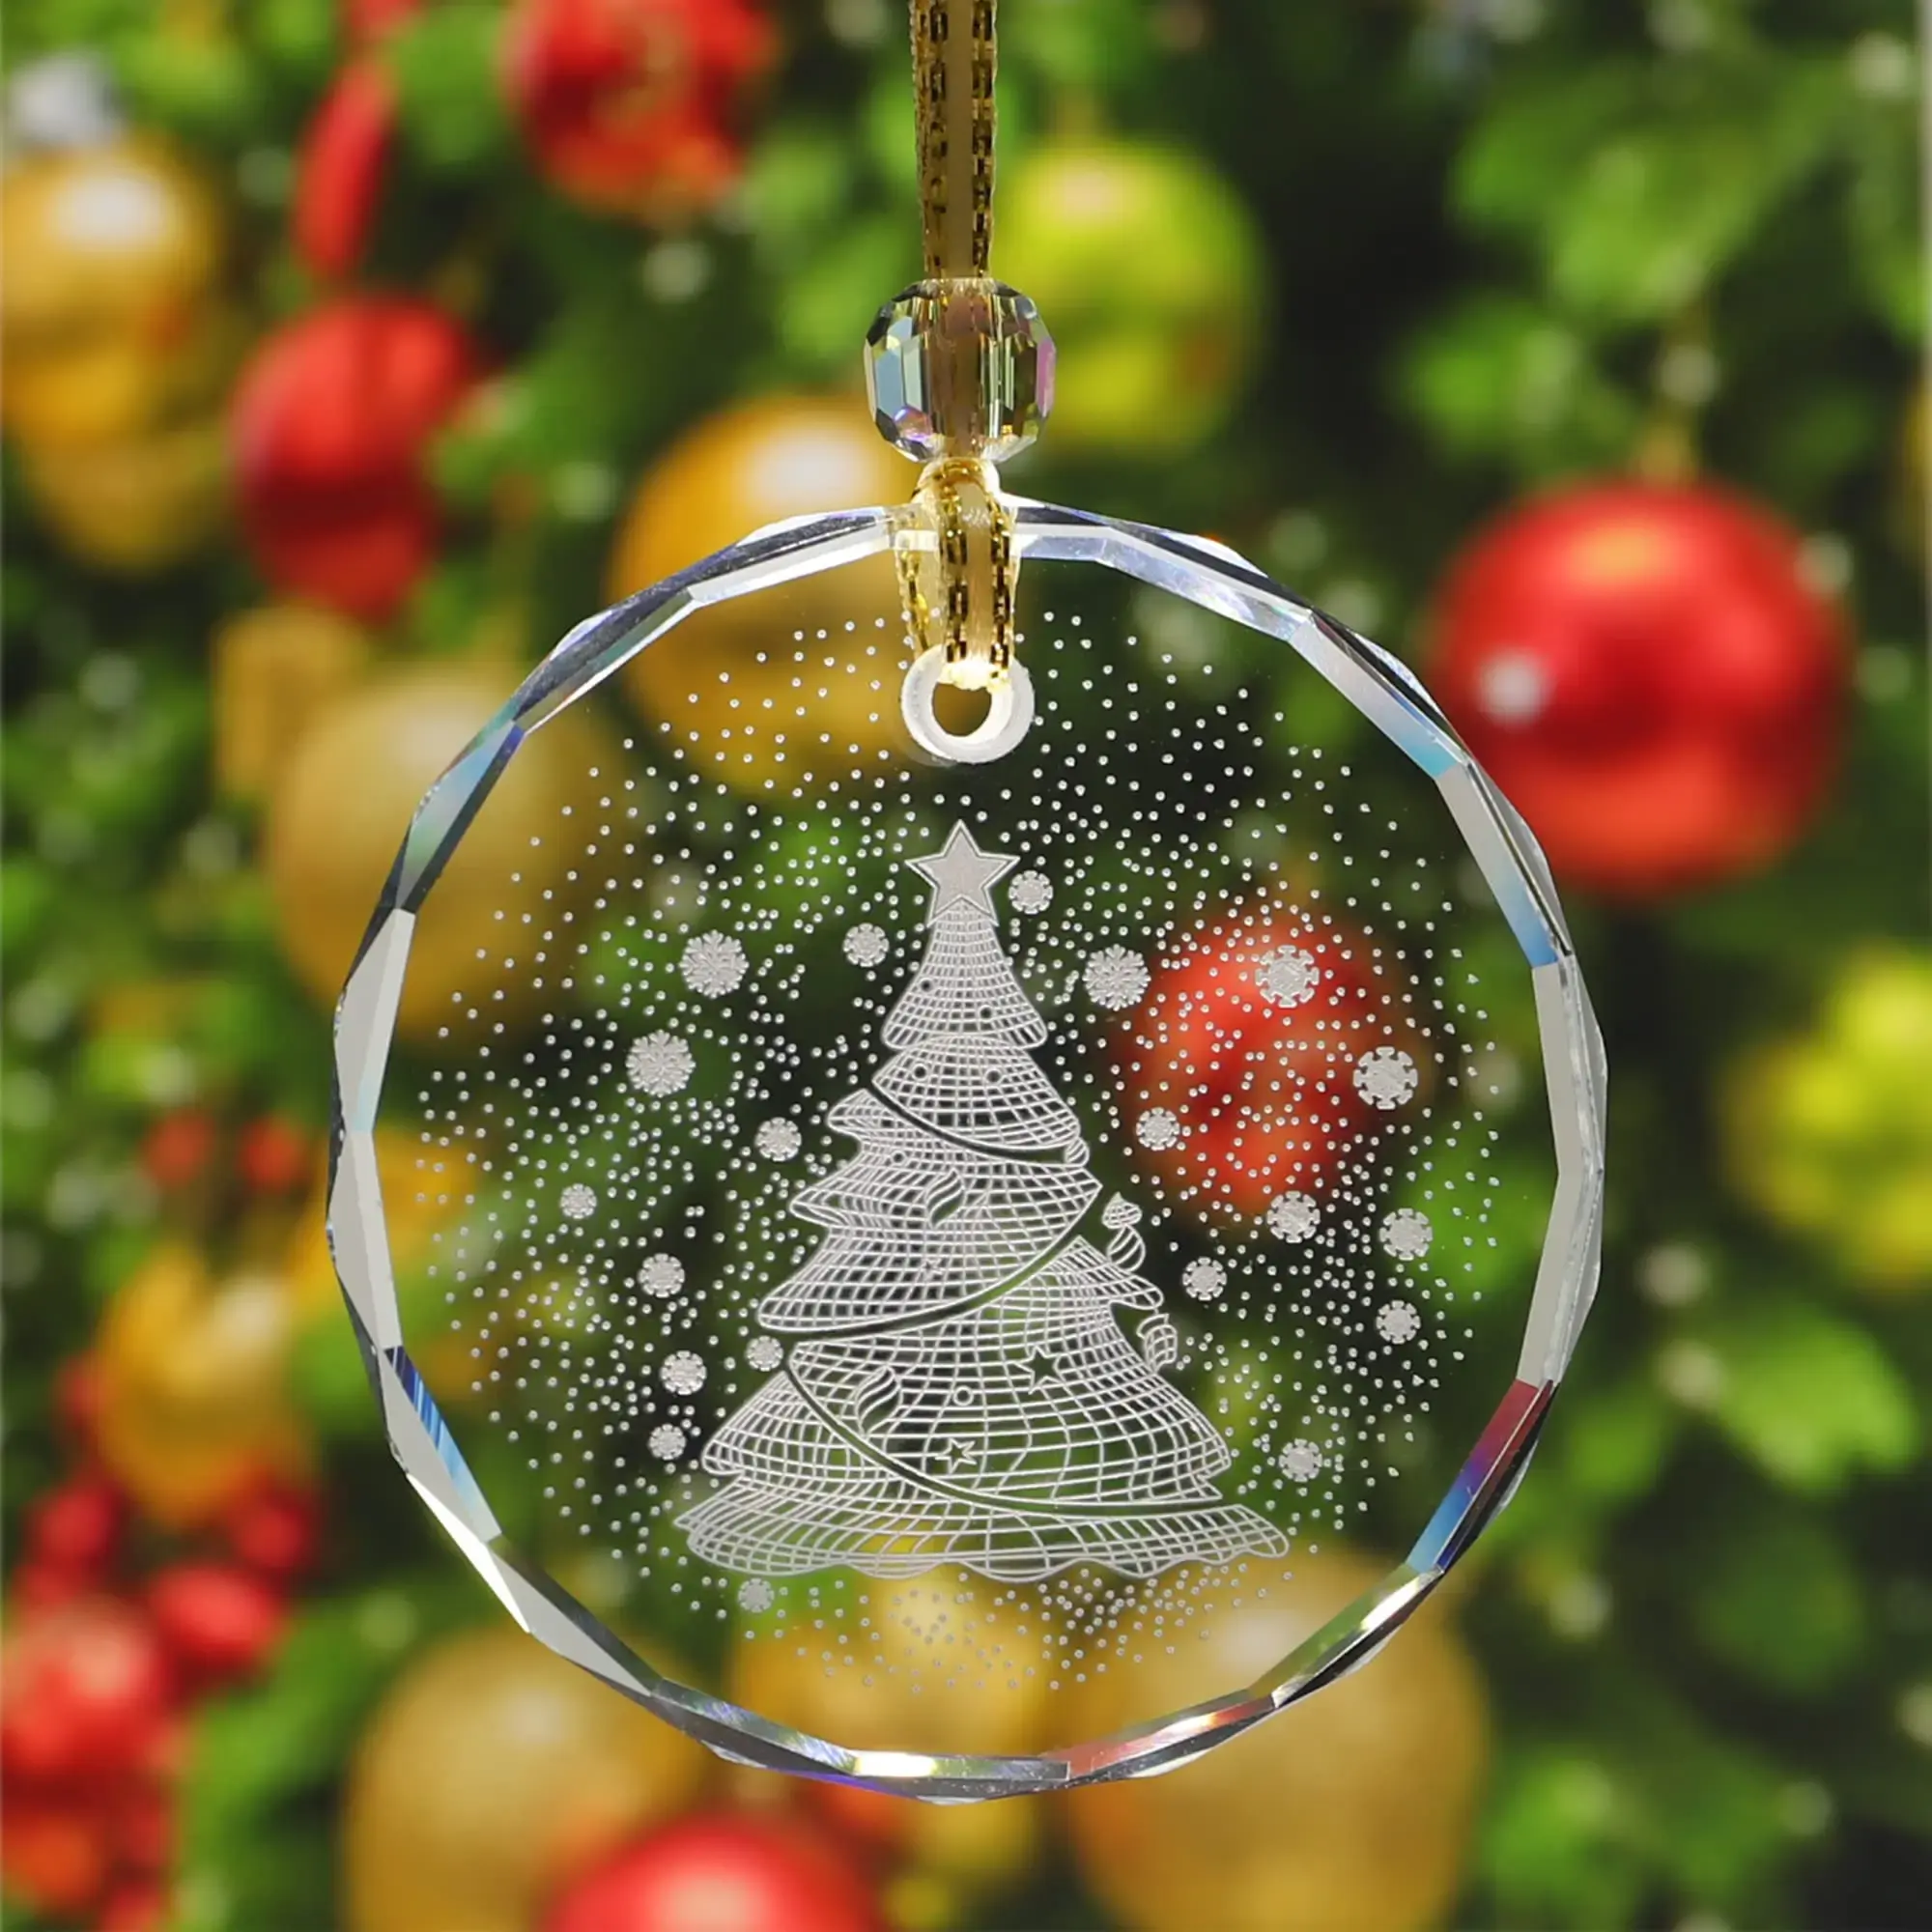 K9 gravure laser personnalisée 3d ornement d'arbre de Noël suspendu en cristal blanc rond ornements de Noël en cristal